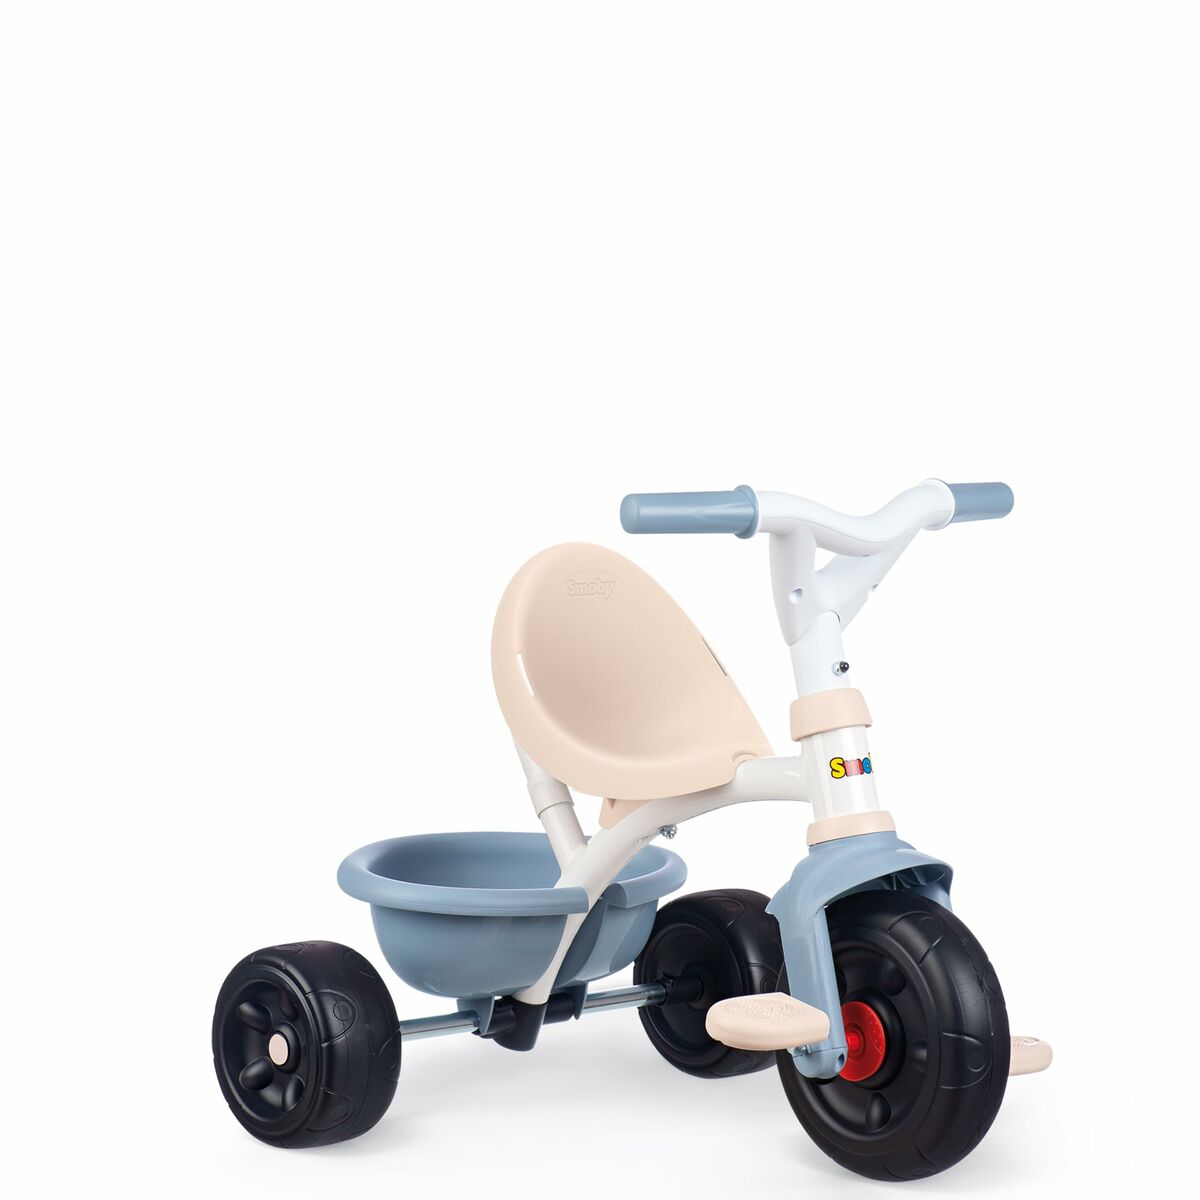 Trehjuling Smoby Be Fun 68 x 52 x 52 cm Blå-Leksaker och spel, Sport och utomhus-Smoby-peaceofhome.se